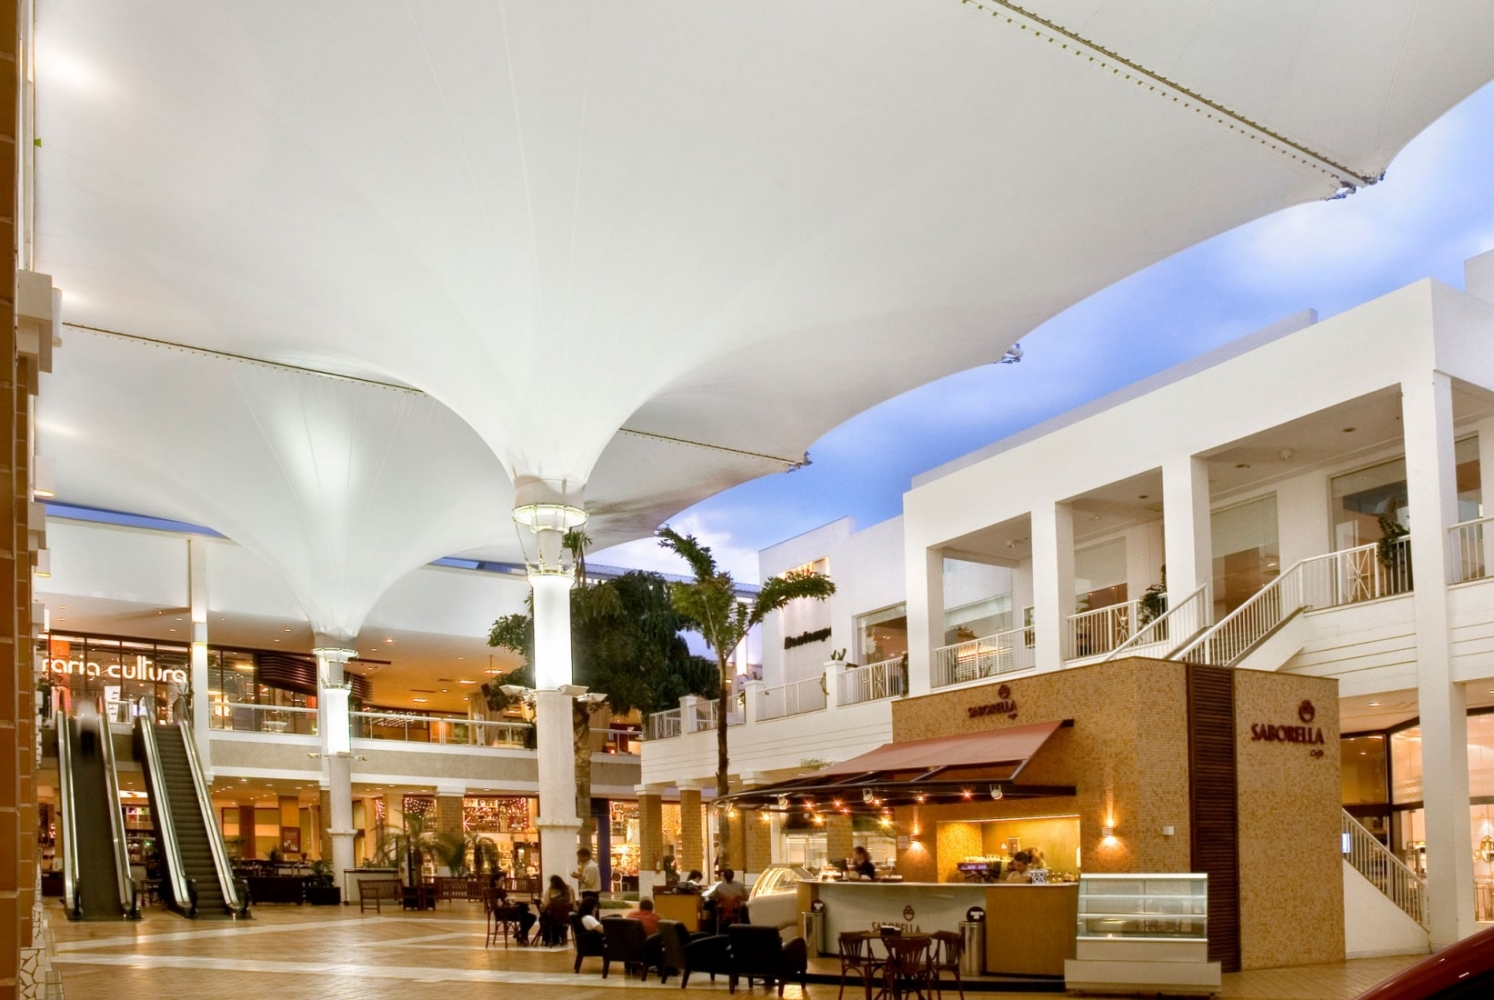 Dak van het winkelcentrum CasaPark in Brazilië